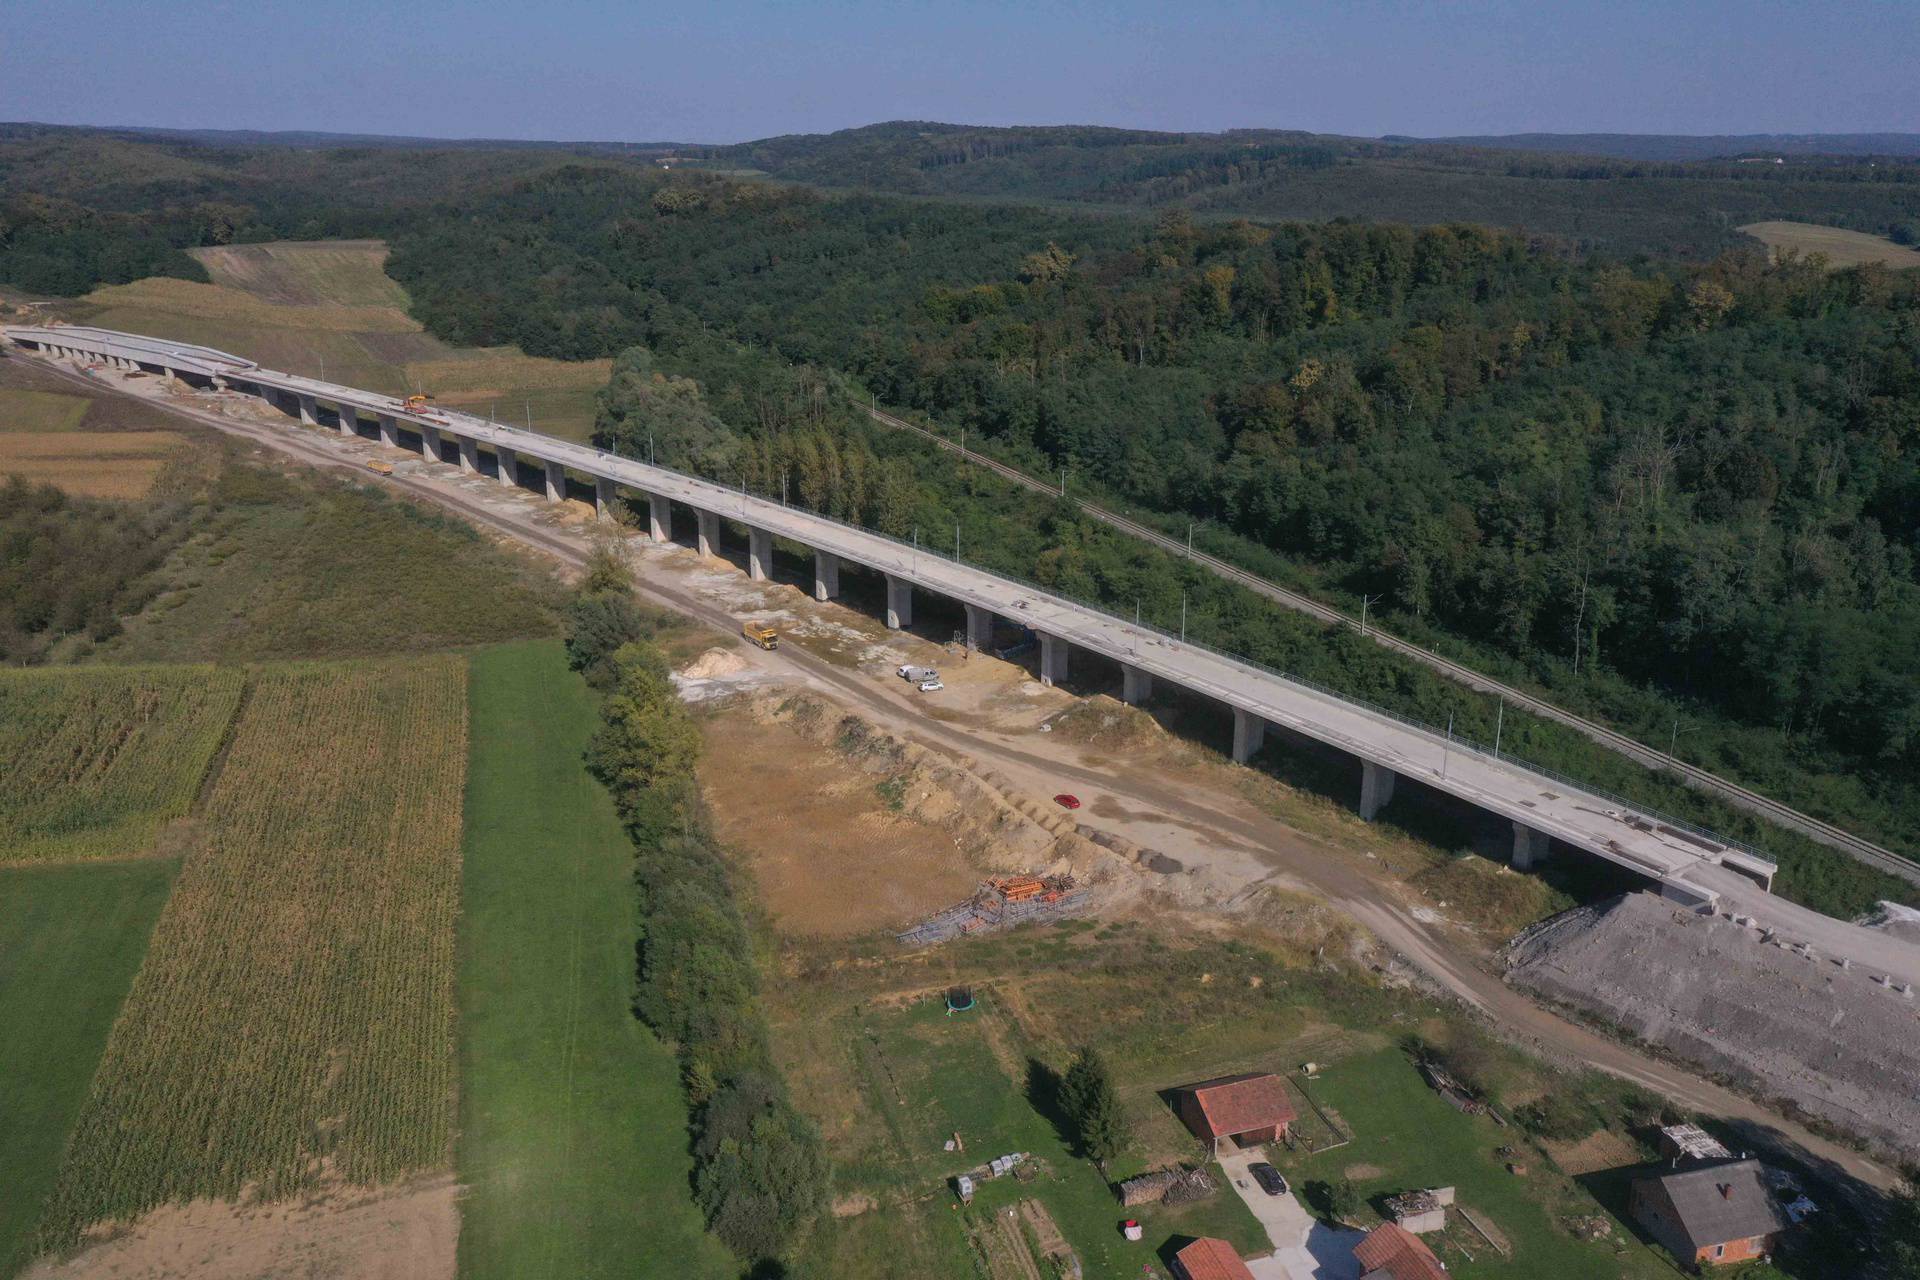 Rekonstrukcija željezničke pruge na dionici Križevci - Koprivnica - državna granica